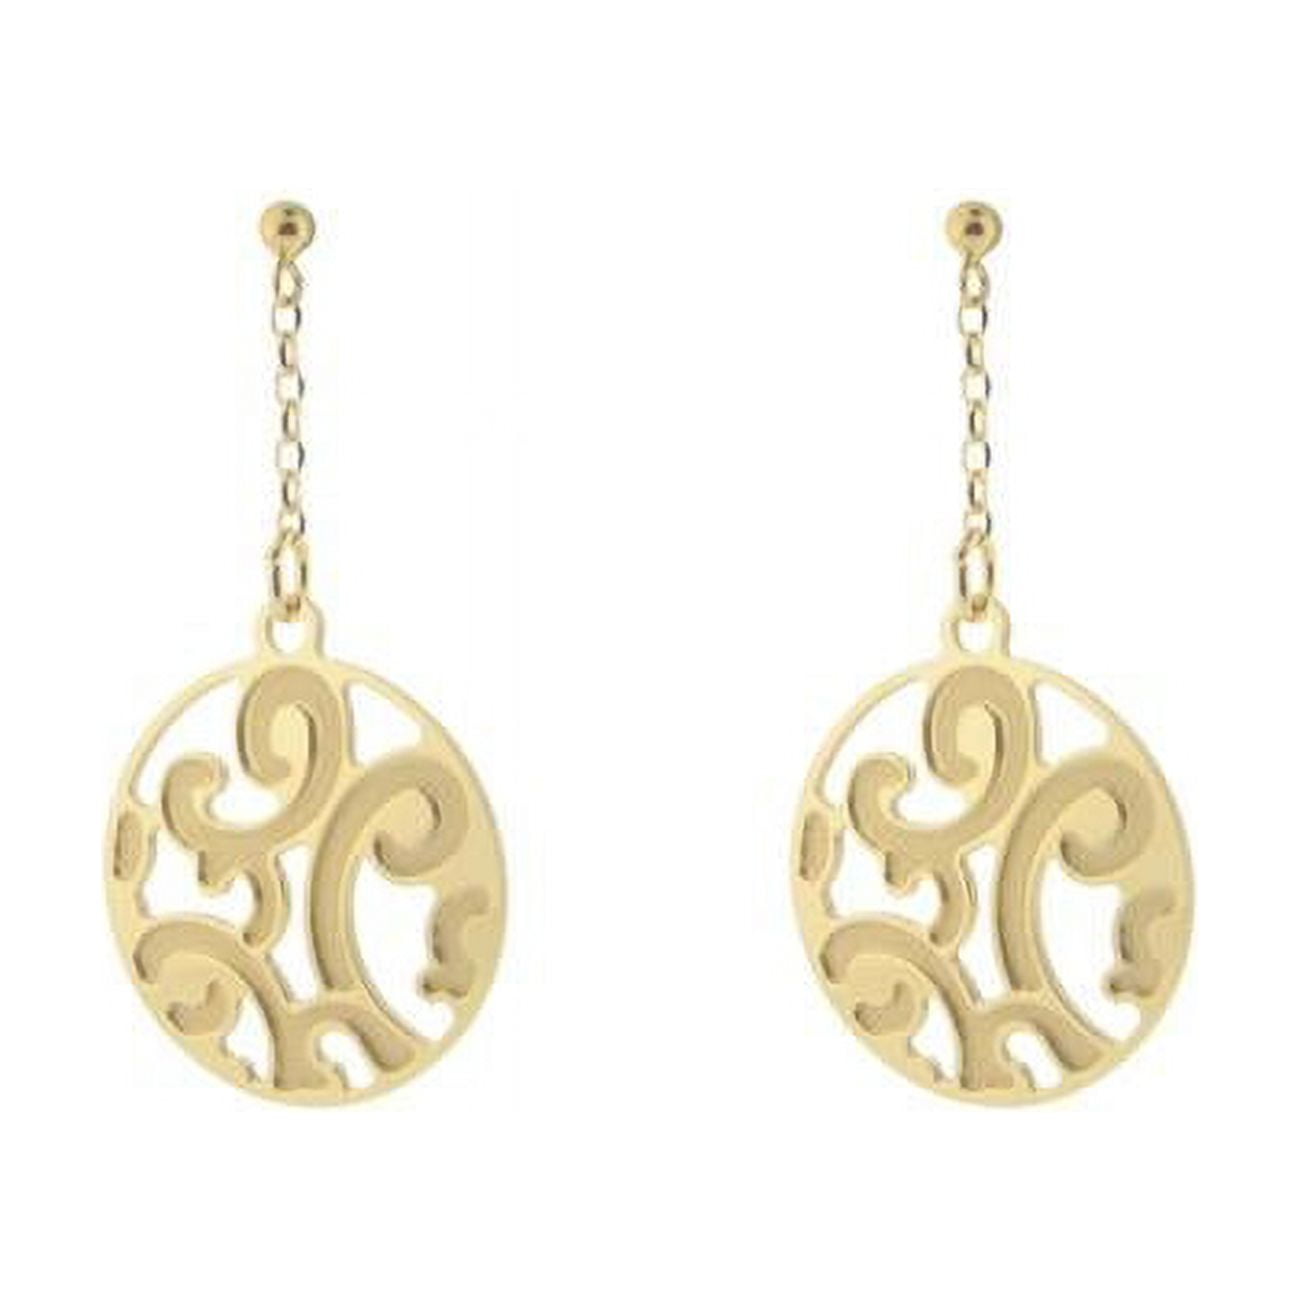 95105g Etruscan Golden Swirls Earrings In Sterling Silver